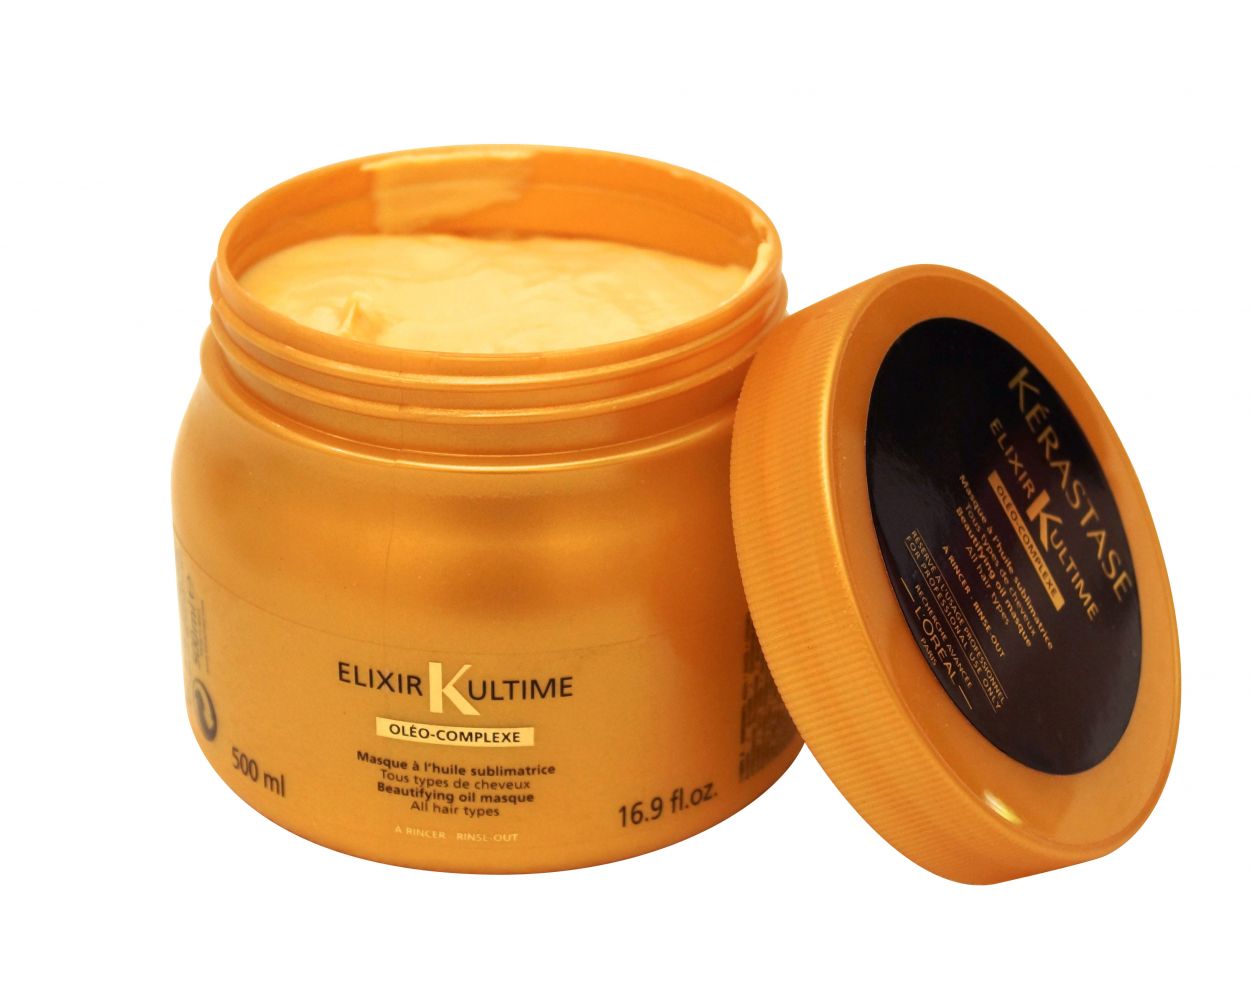 Elixir Ultime Masque | Hair Care - Beautyvice.com